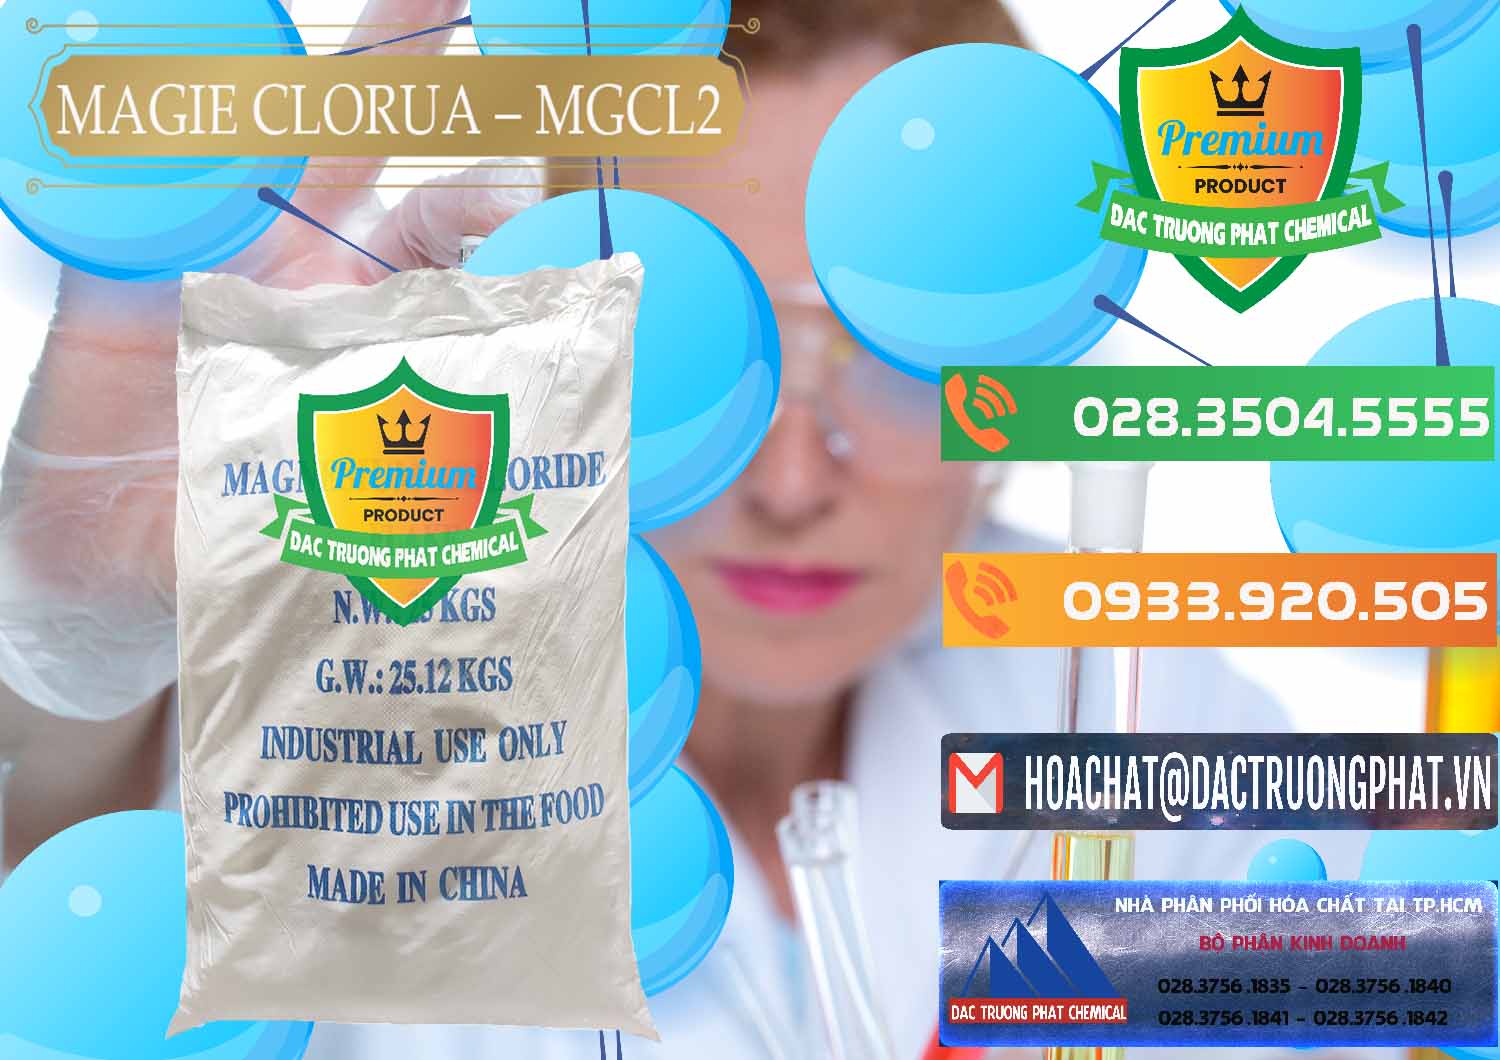 Cty kinh doanh _ bán Magie Clorua – MGCL2 96% Dạng Vảy Trung Quốc China - 0091 - Nơi chuyên cung cấp & nhập khẩu hóa chất tại TP.HCM - hoachatxulynuoc.com.vn